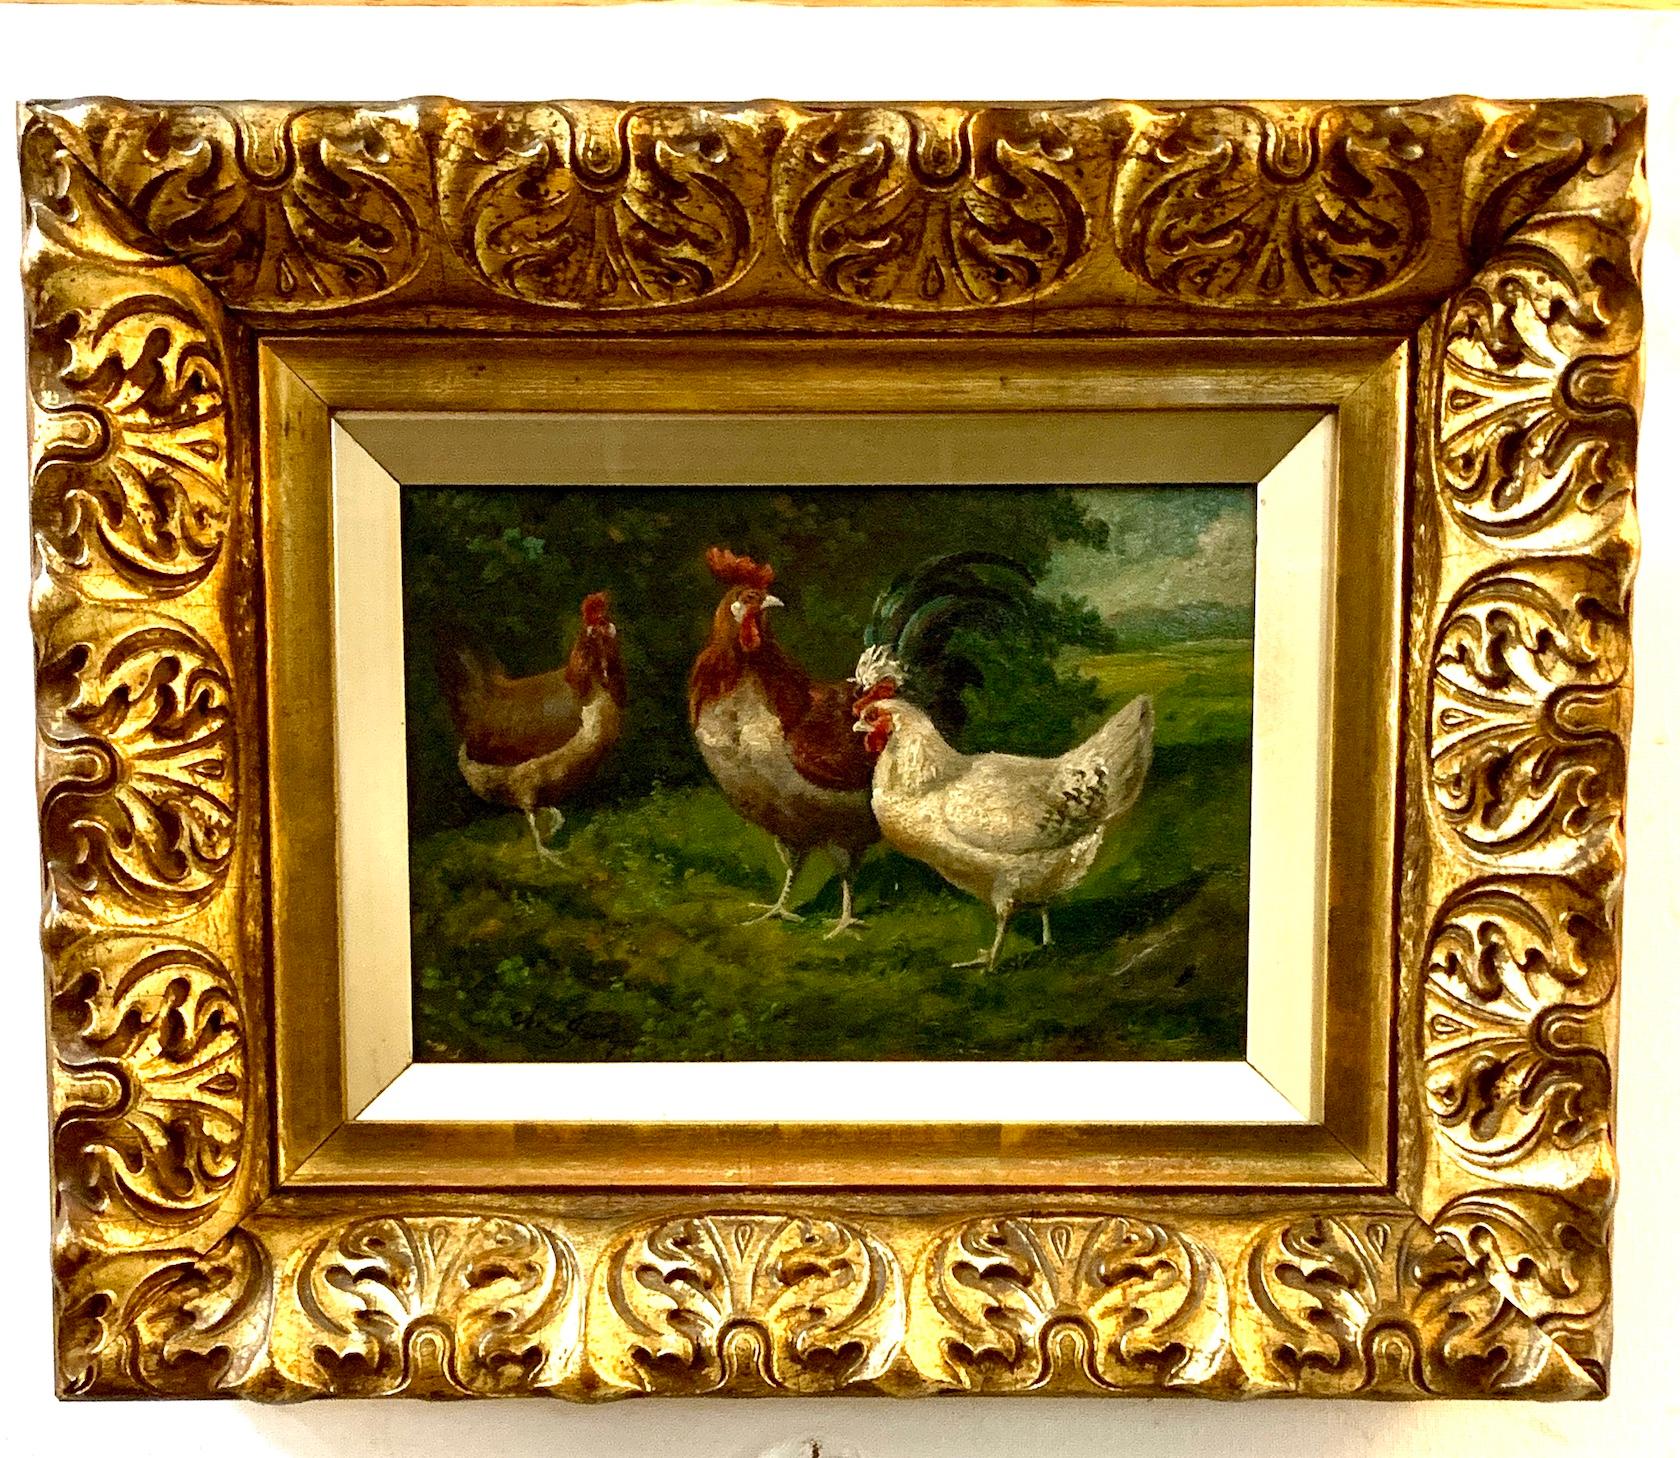 Französische Hühner aus dem 19. Jahrhundert in einer Landschaft